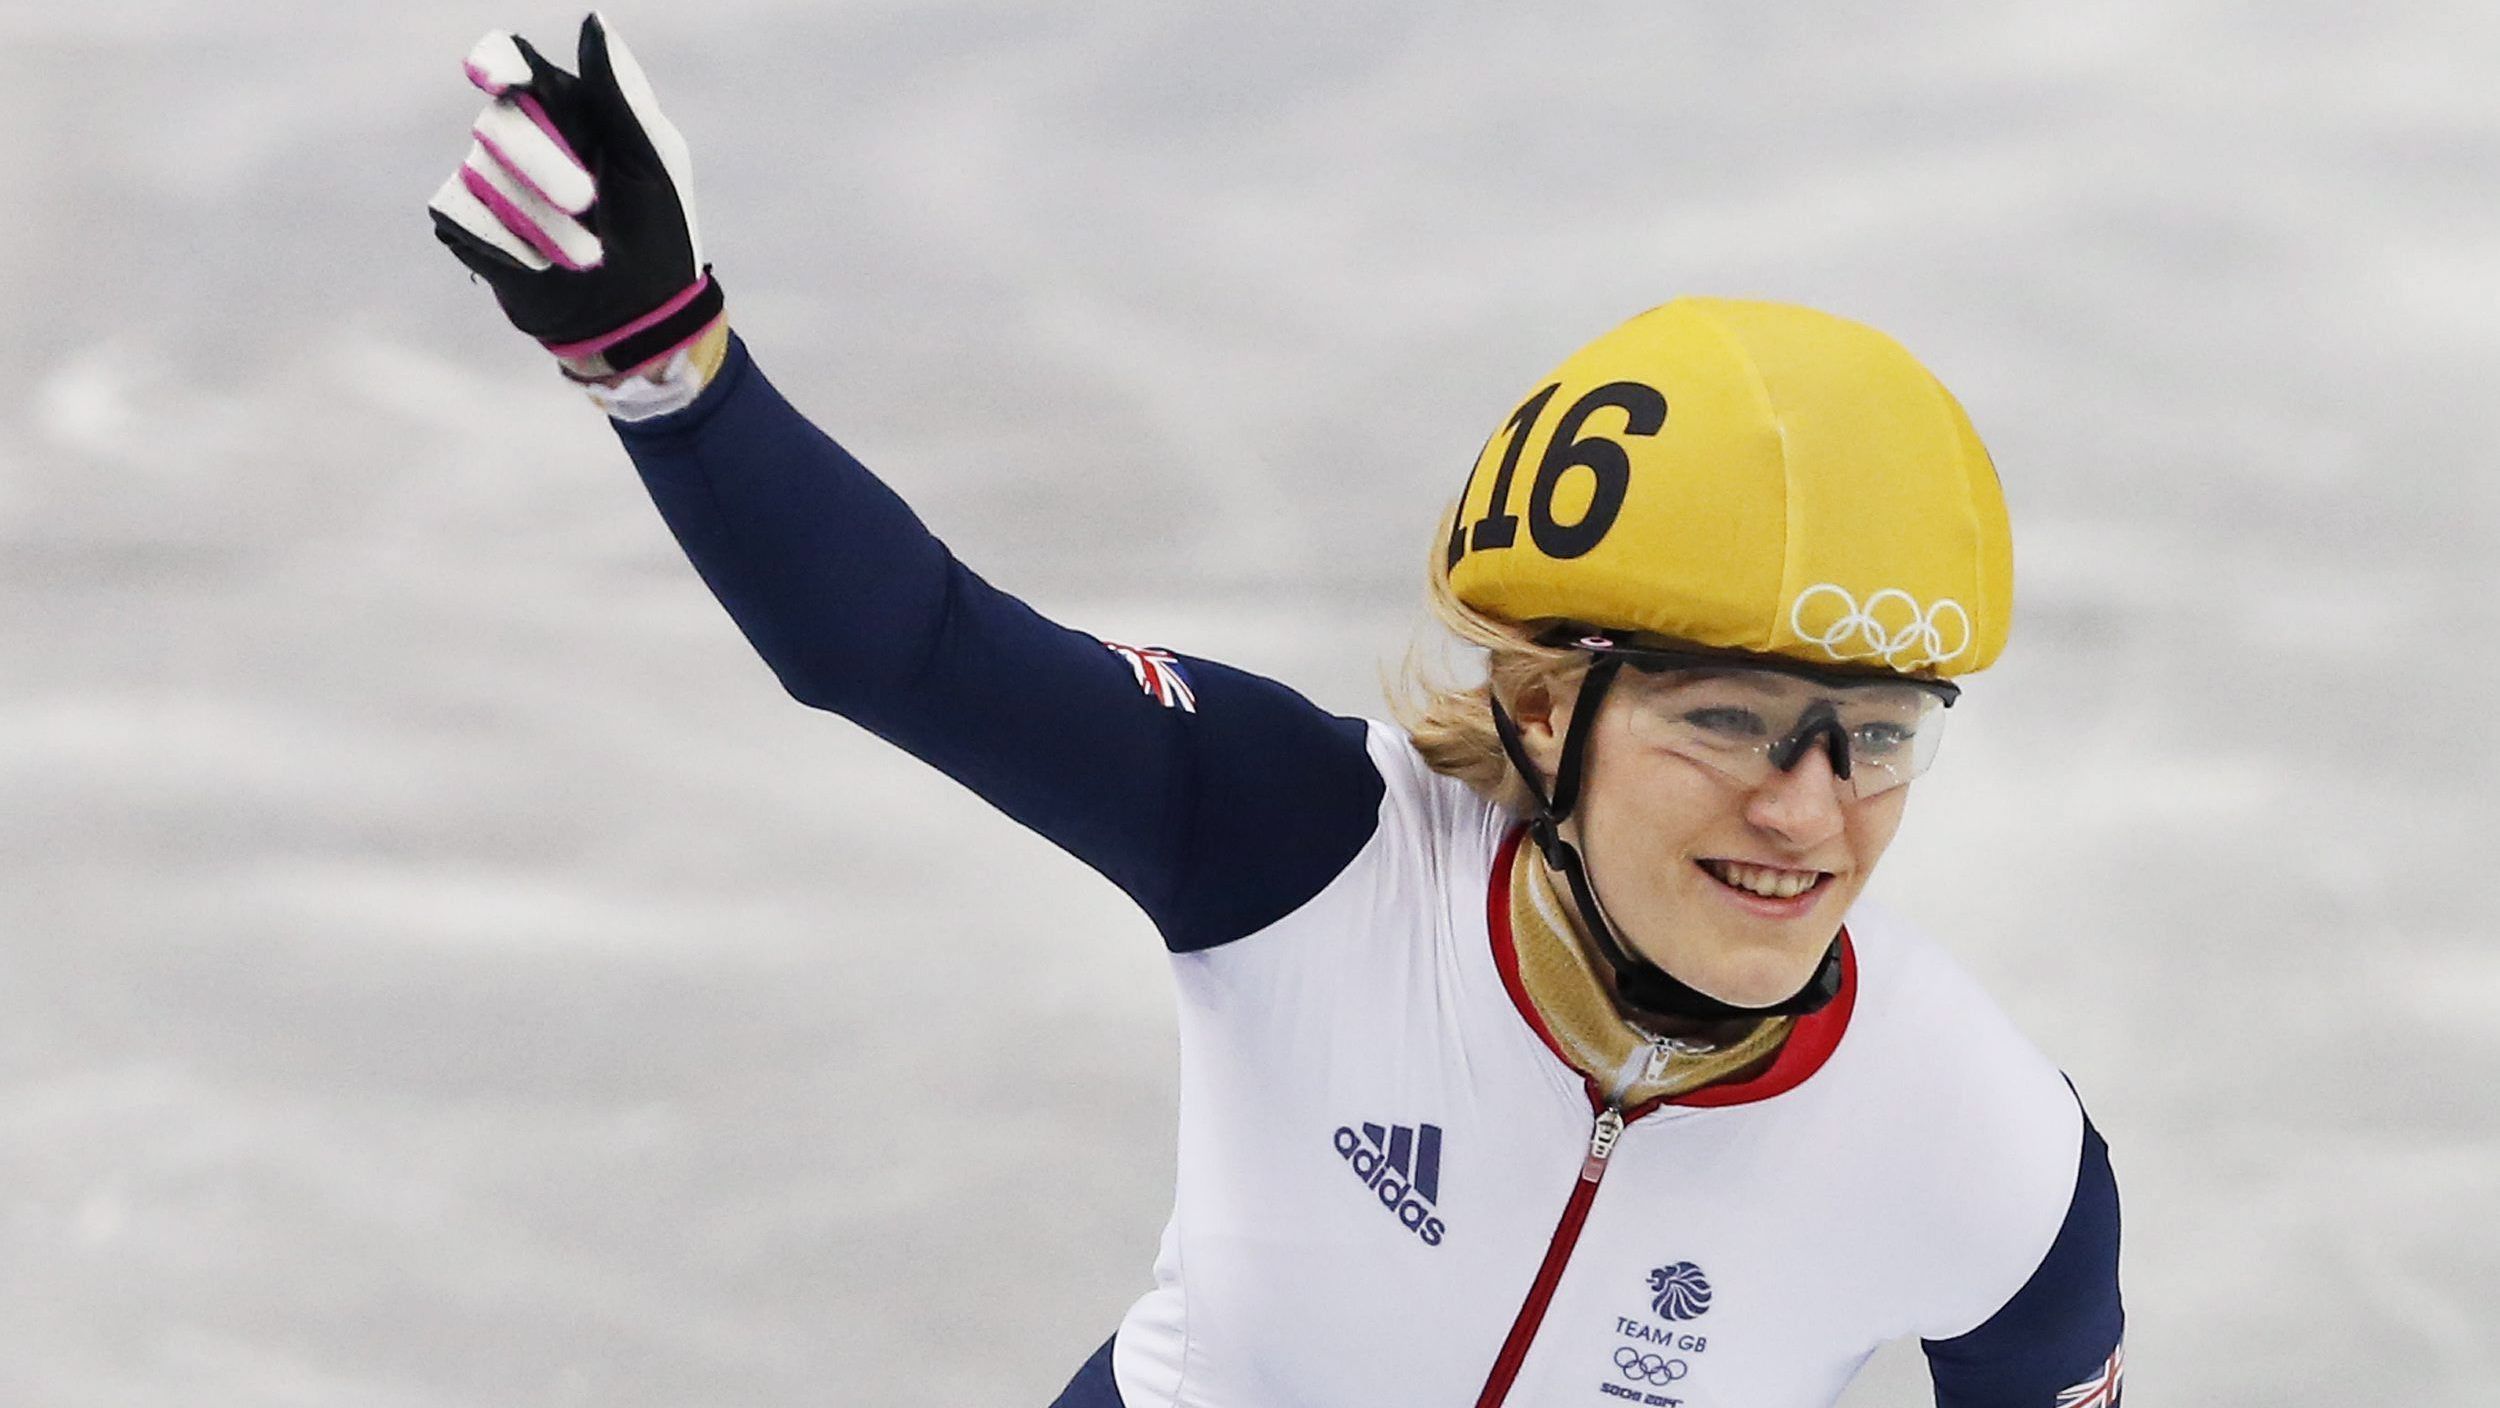 A patinadora de velocidade britânica Elise Christie nos Jogos Olímpicos de Sochi, em 2014.